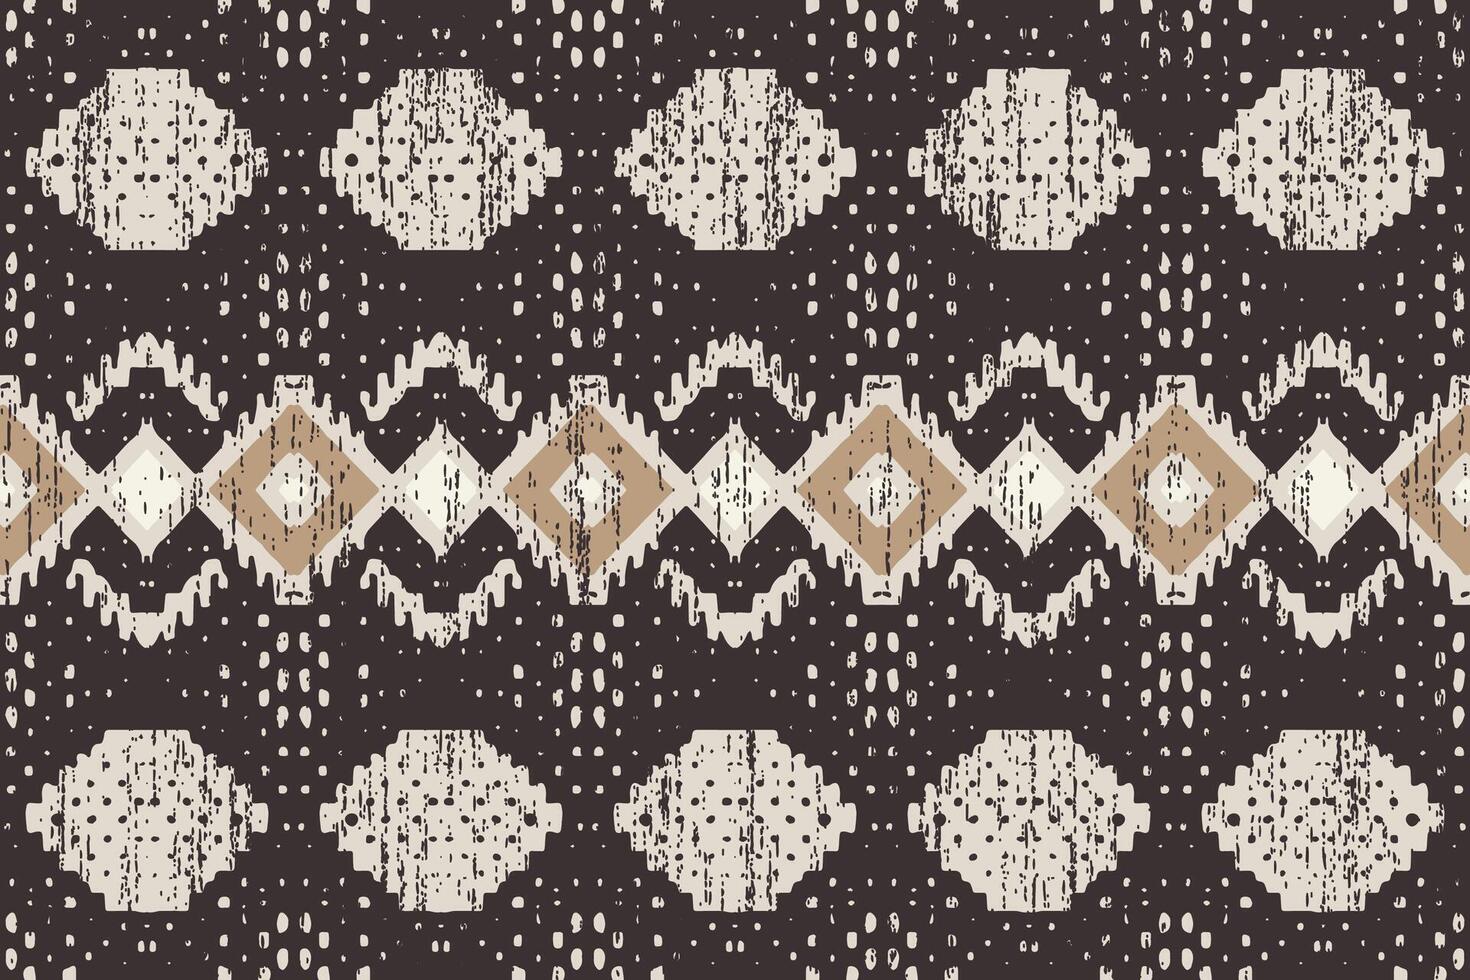 Navajo tribal vector naadloos patroon. inheems Amerikaans ornament. etnisch zuiden western decor stijl. boho meetkundig ornament. vector naadloos patroon. Mexicaans deken, tapijt. geweven tapijt illustratie